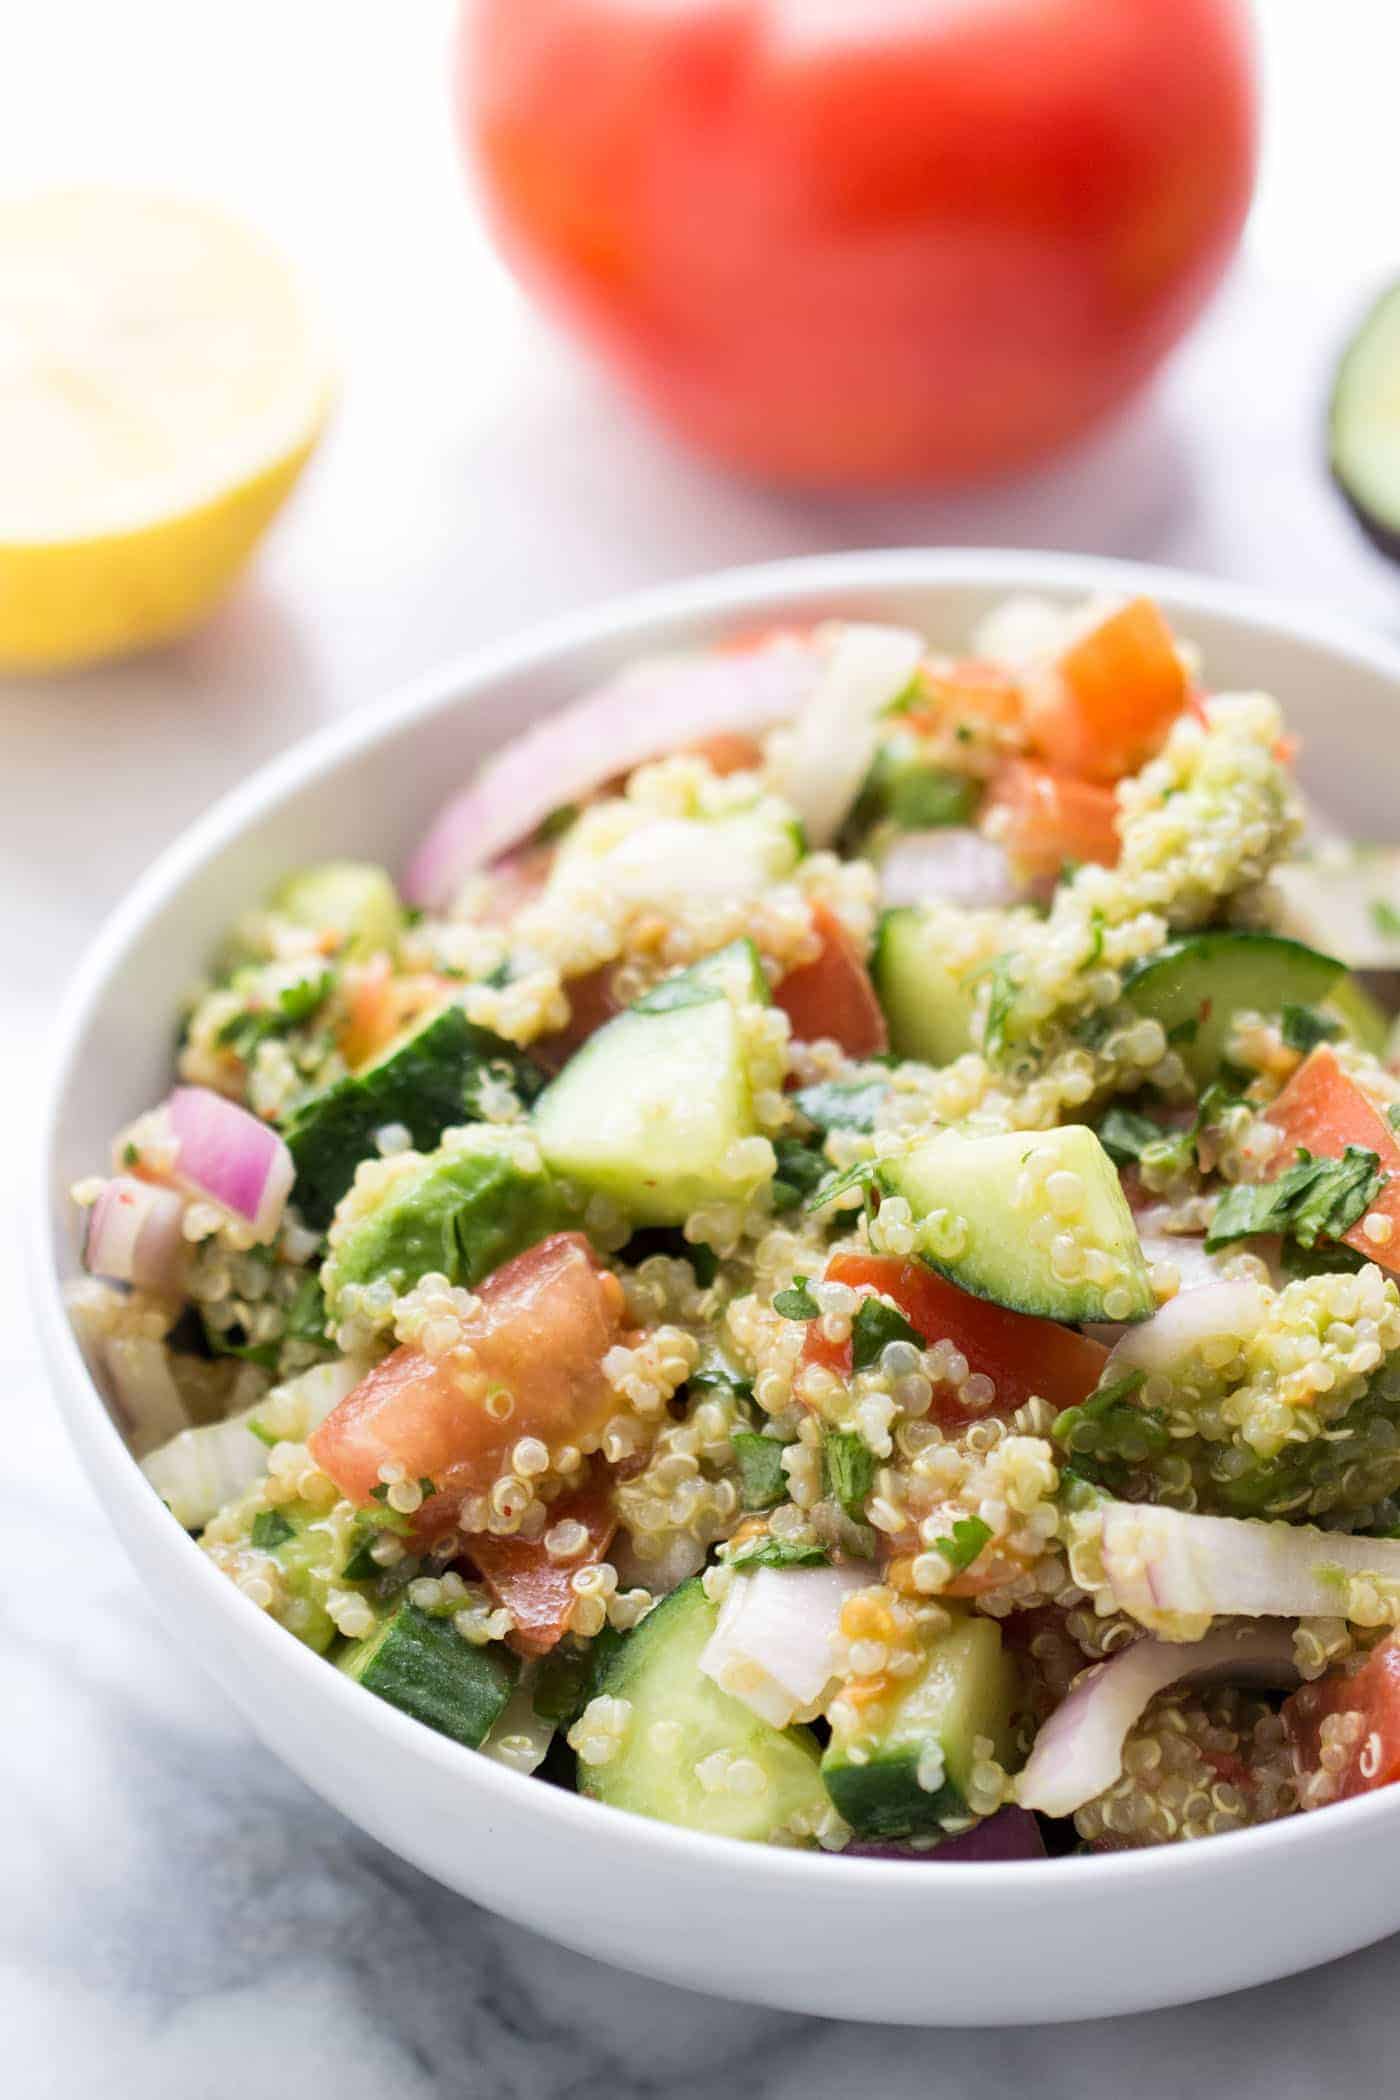  Salade de Quinoa à l'avocat avec Tomates + Concombres so si lumineuse, fraîche et saine! C'est la salade estivale parfaite et facile à prendre pour les pique-niques ou à emporter pour les barbecues {végétalien}